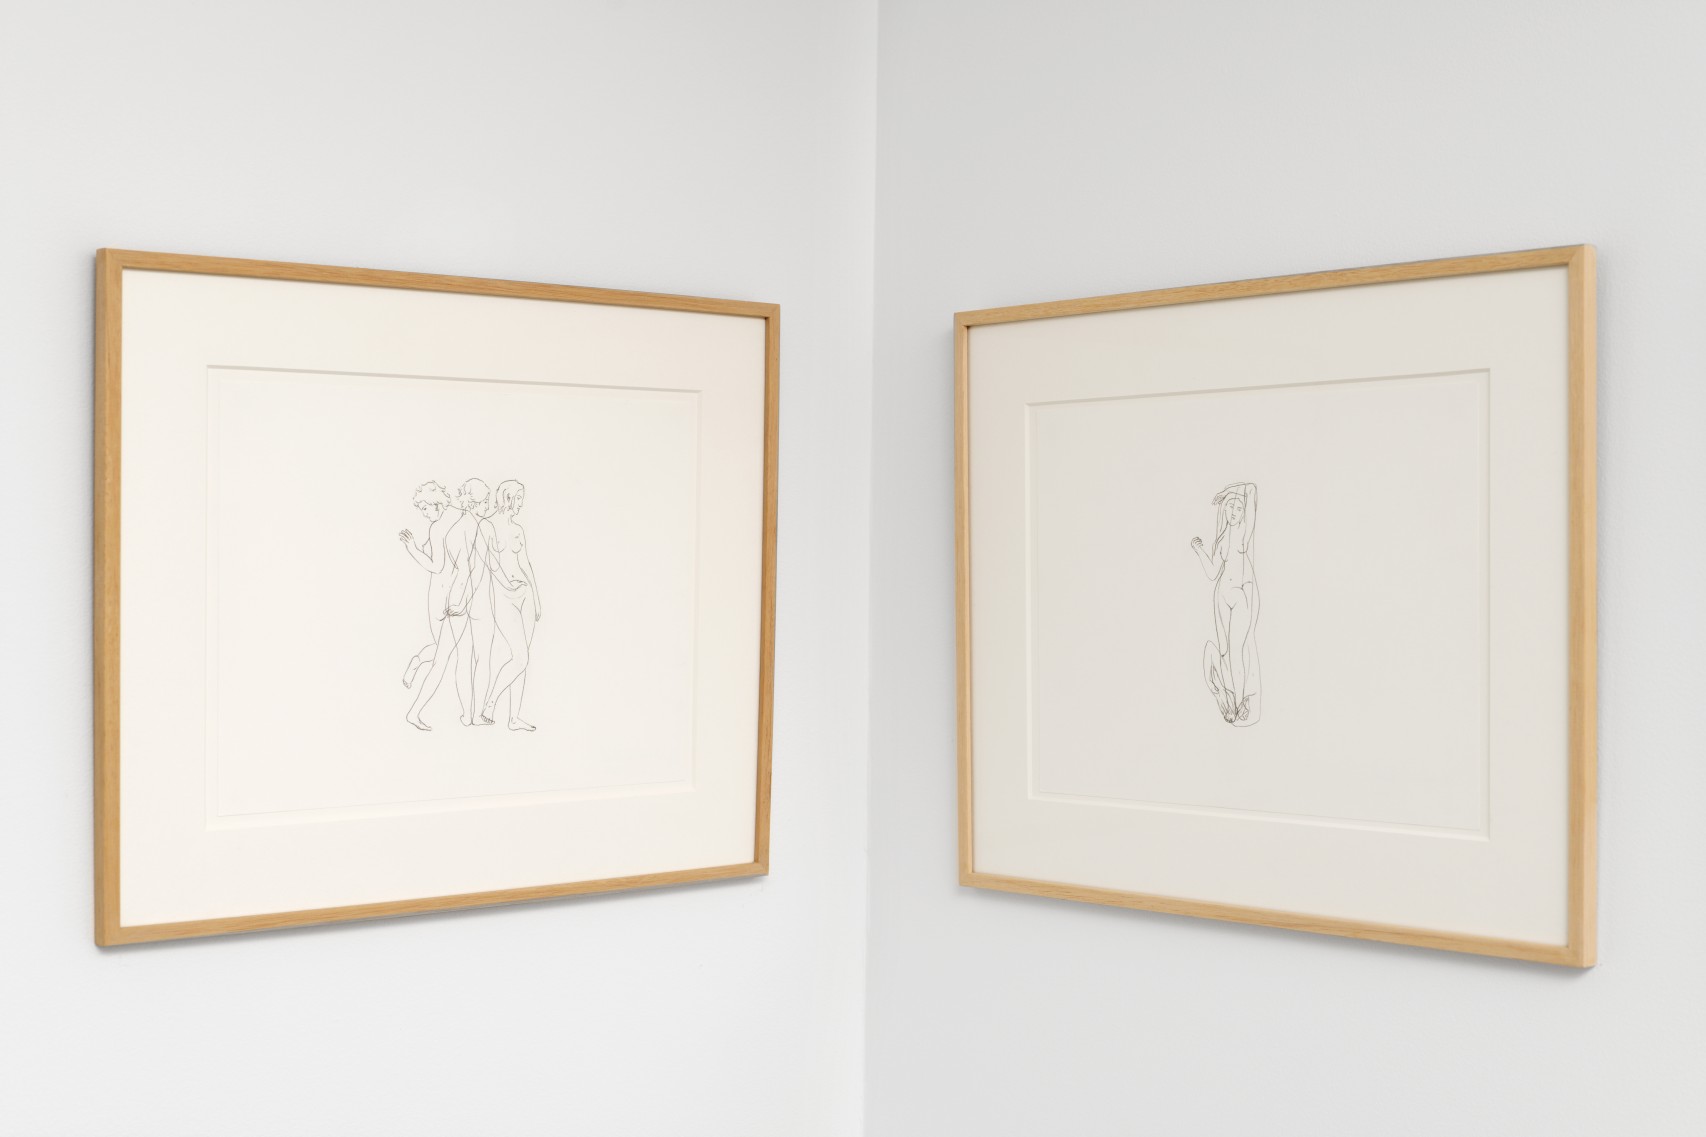 À gauche : *The Female Gaze .02*, 2021, dessin sur papier, 37 x 45 cm. À droite : *The Female Gaze .05*, 2021, dessin sur papier, 37 x 45 cm.
Courtesy the artist & Spiaggia Libera, Paris. © Aurélien Mole